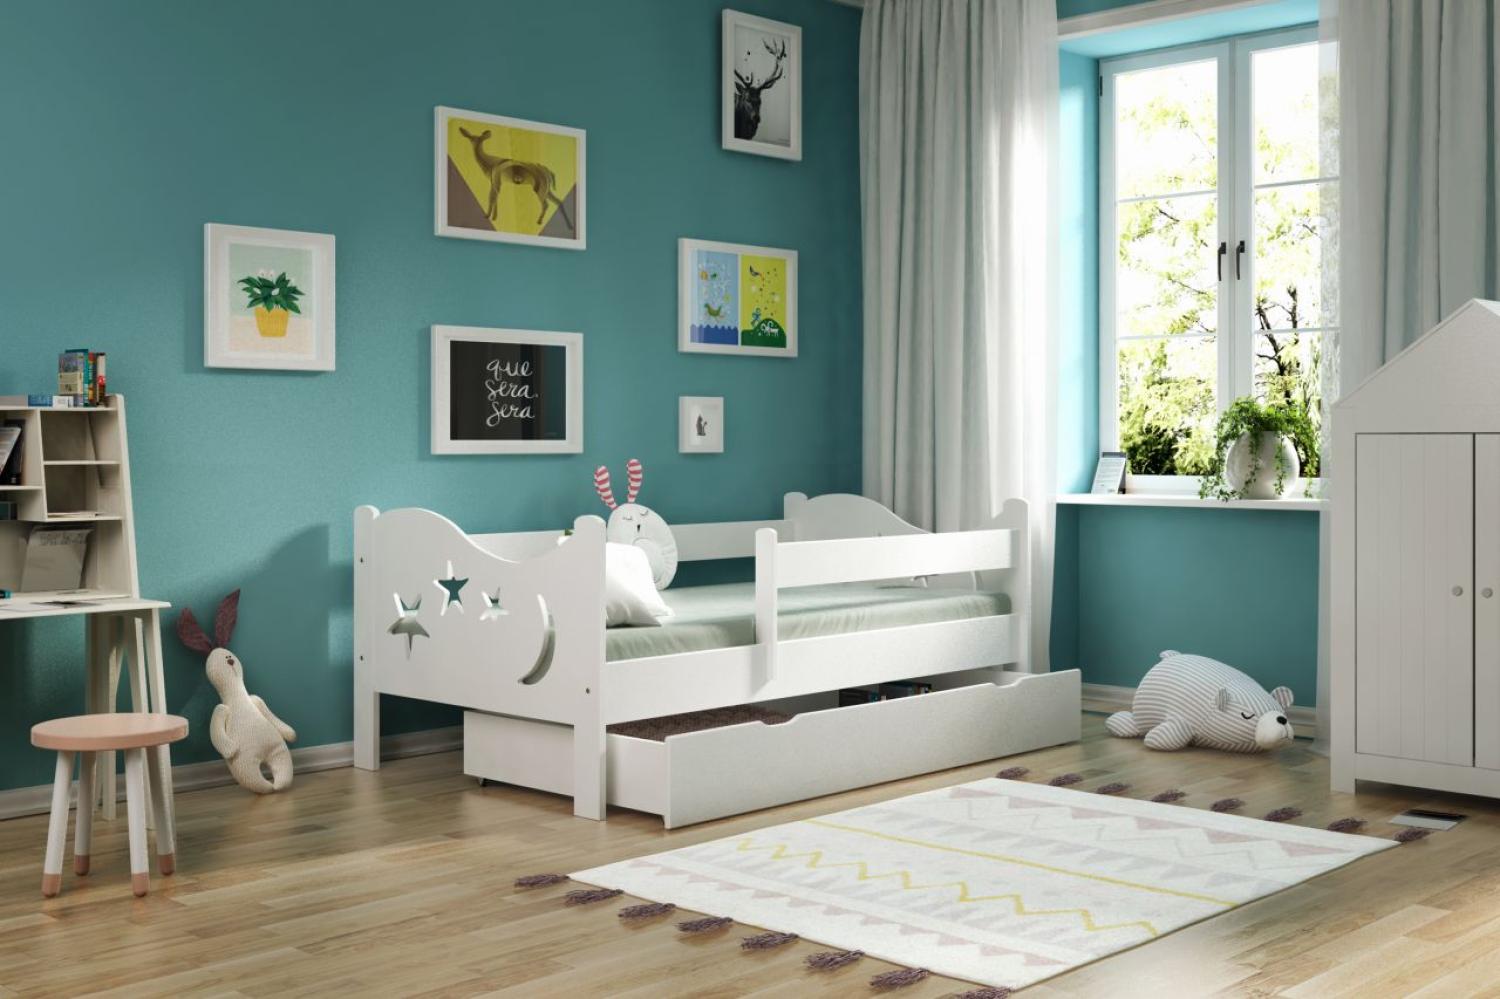 Kinderbettenwelt 'Chrisi' Kinderbett 80x160 cm, Weiß, Kiefer massiv, inkl. Schublade, Lattenrost und Matratze Bild 1